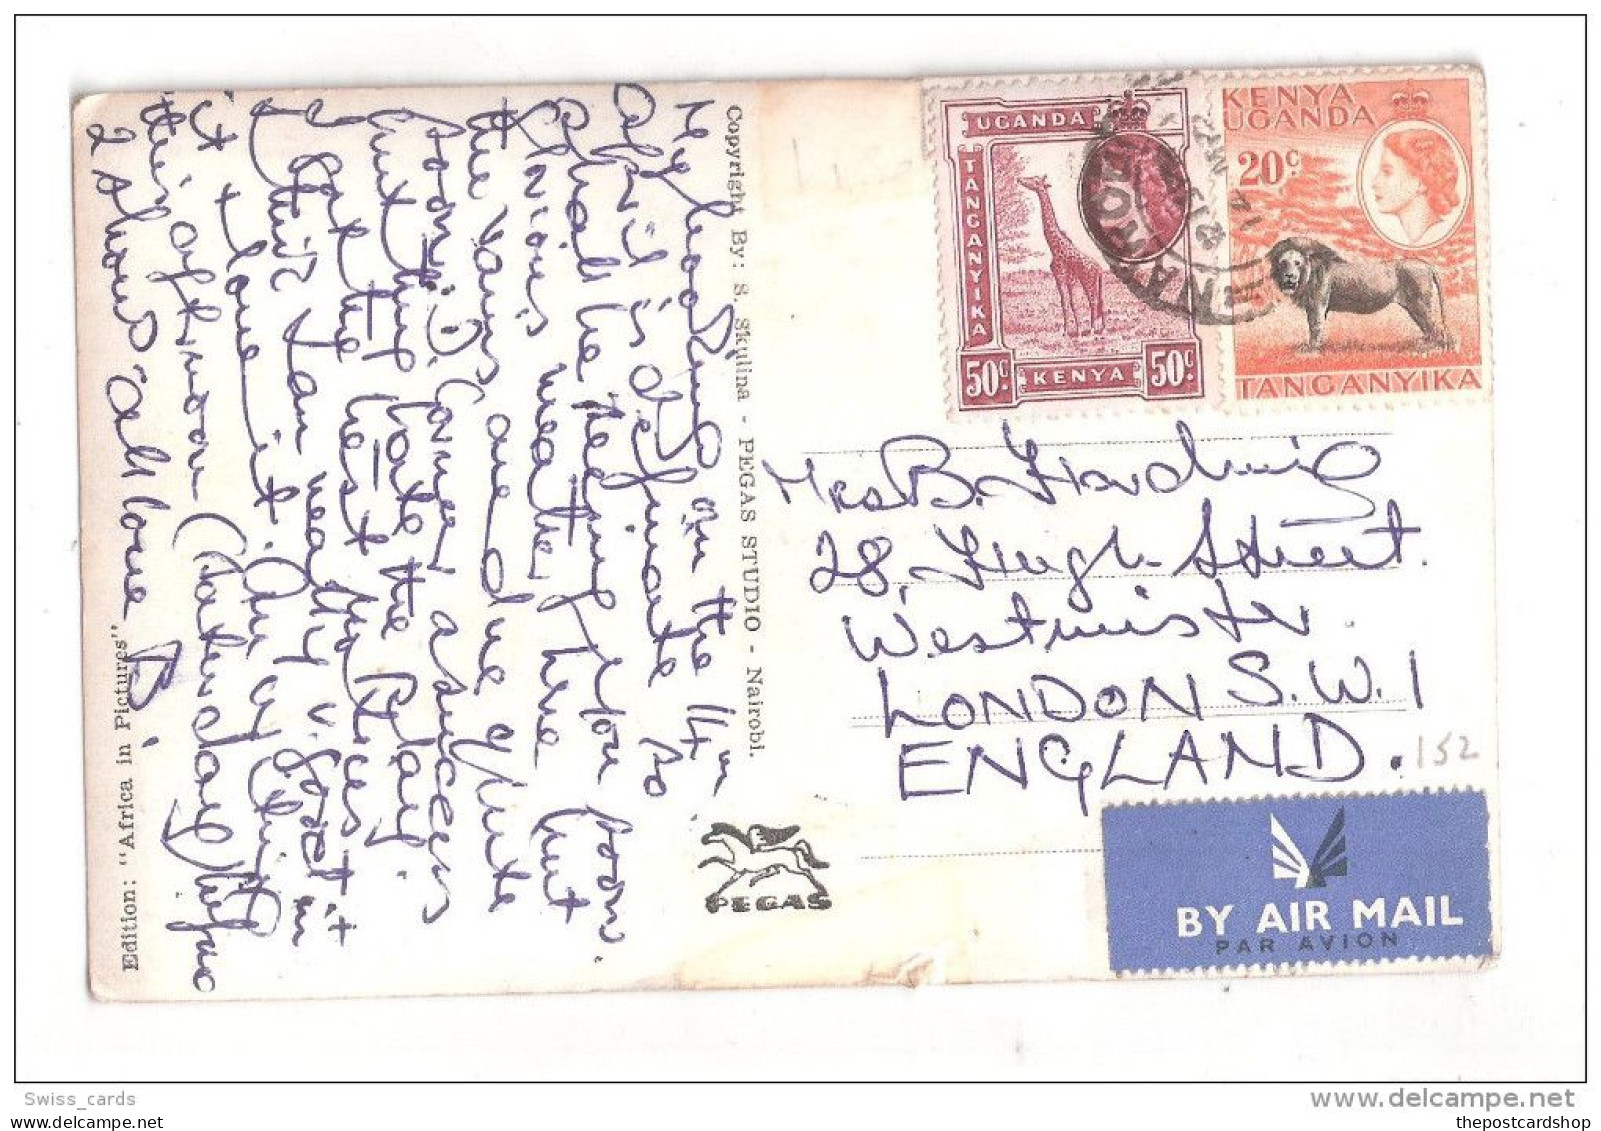 Uganda Kenya Tanganyika USED STAMPS Kenya MOMBASA OLD HARBOUR 1950s Postcard - Kenia